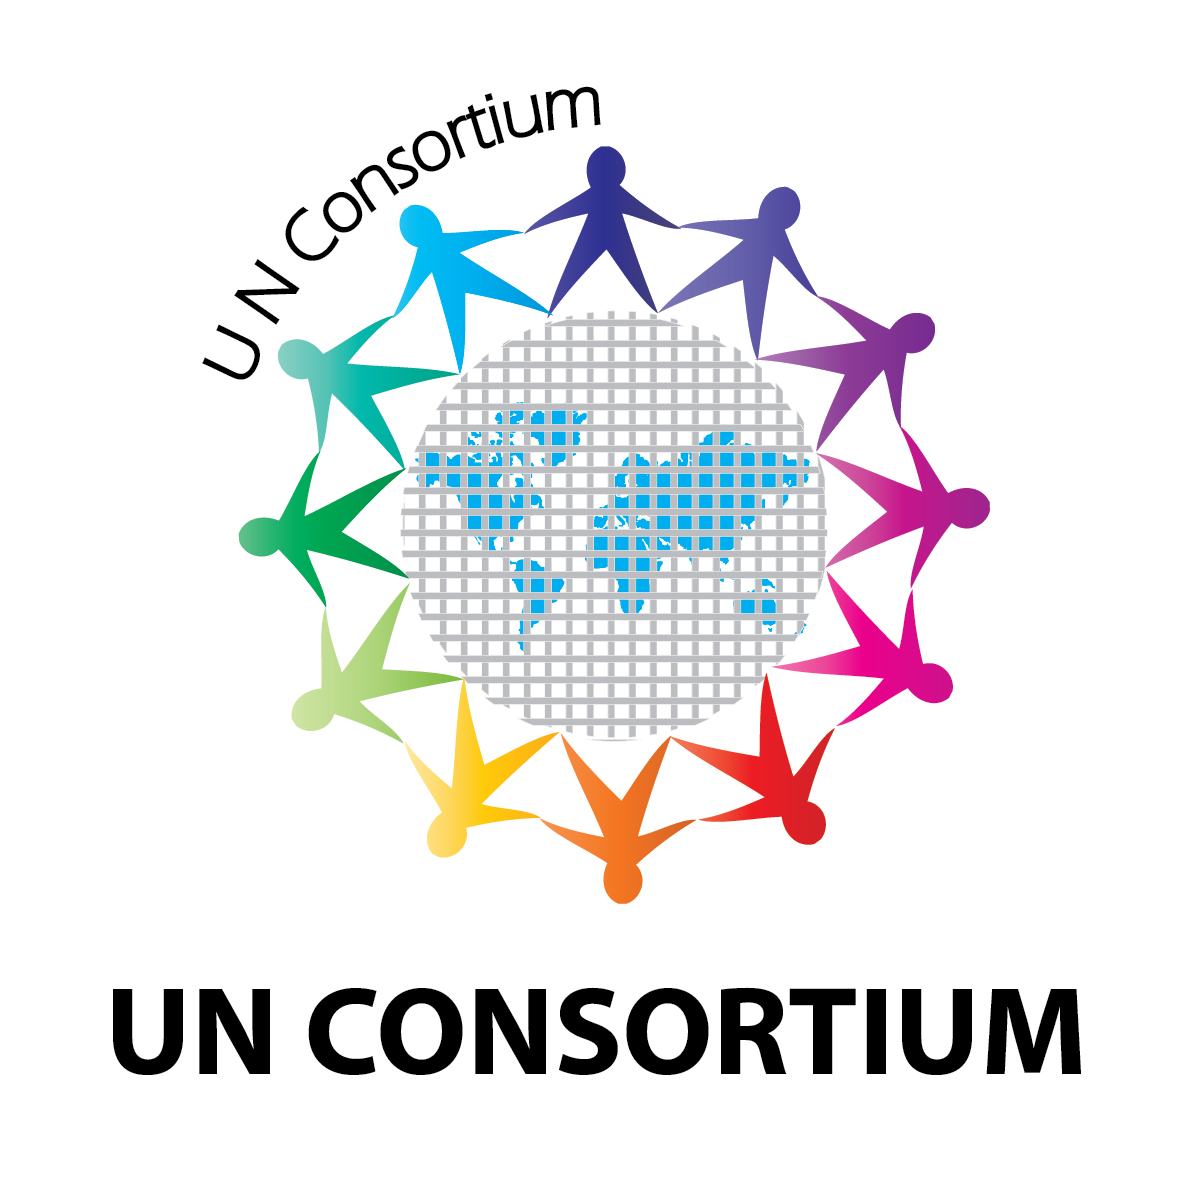 UN Consortium